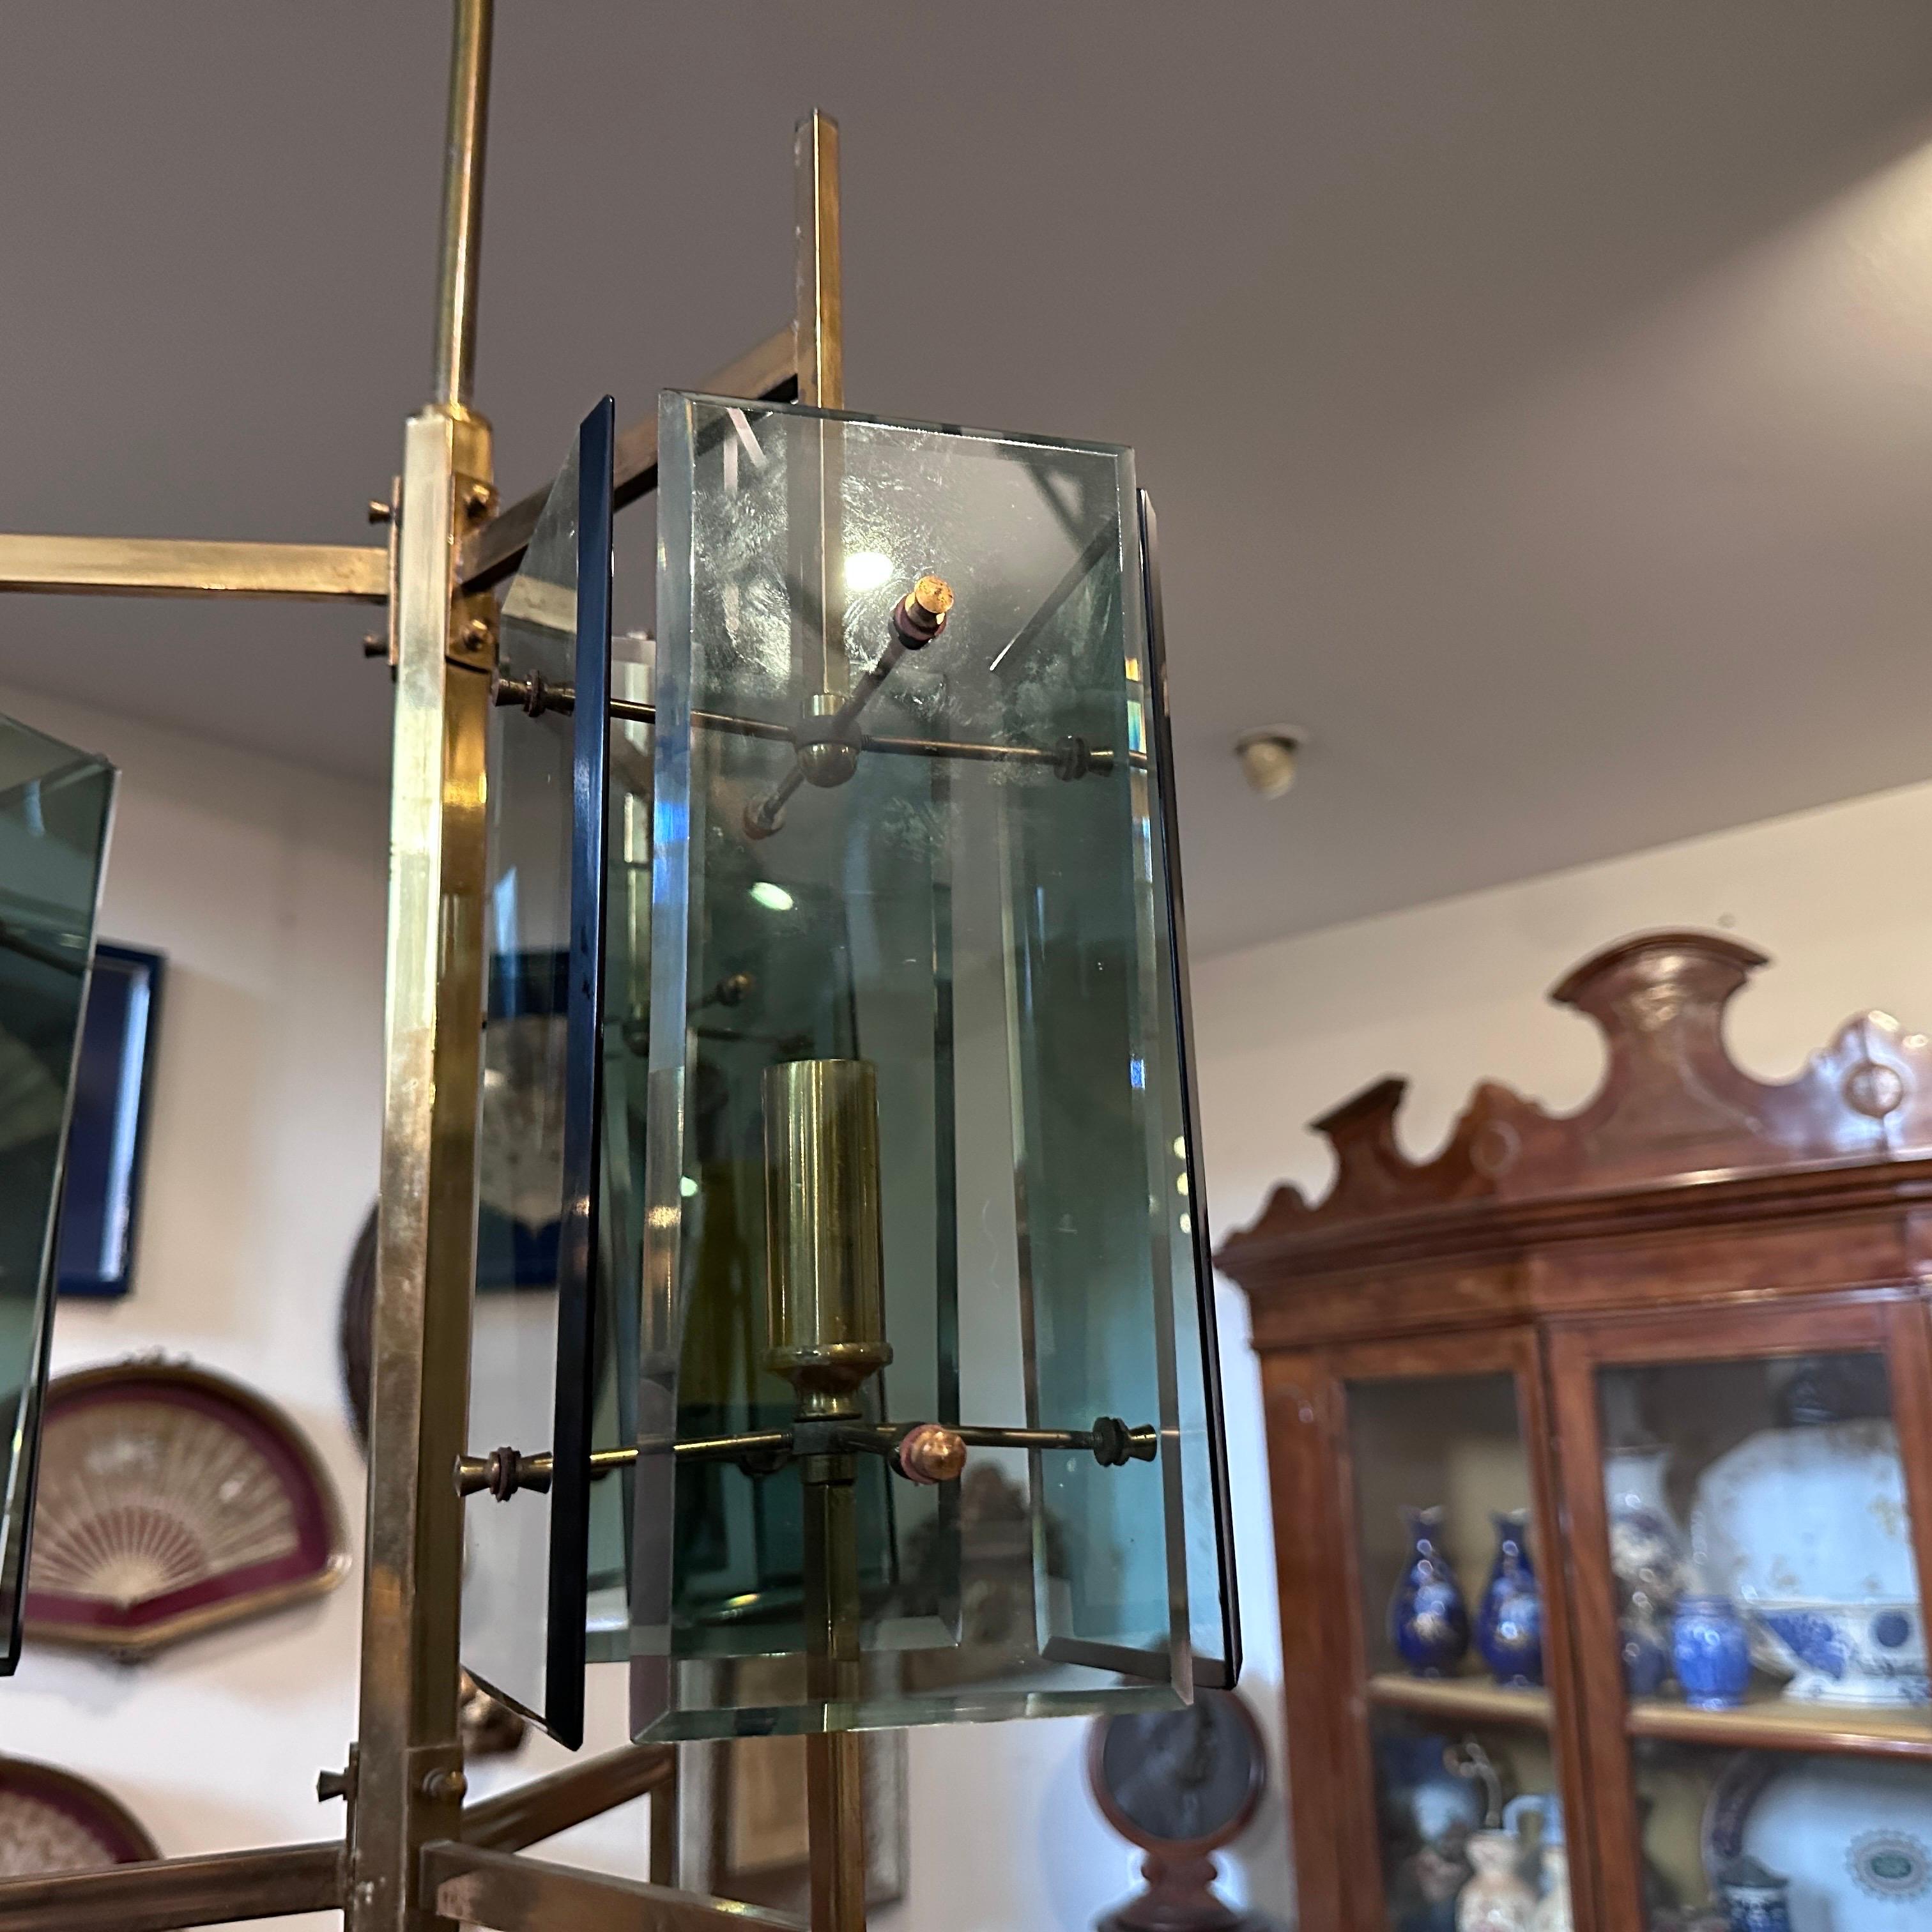 Lustre de style Mid-Century Modern conçu et fabriqué en Italie dans les années 70 par Cristal Arte, il nécessite des ampoules e14 normales, le laiton est dans son état d'origine, les verres sont en parfait état et il est en état de marche. Le lustre